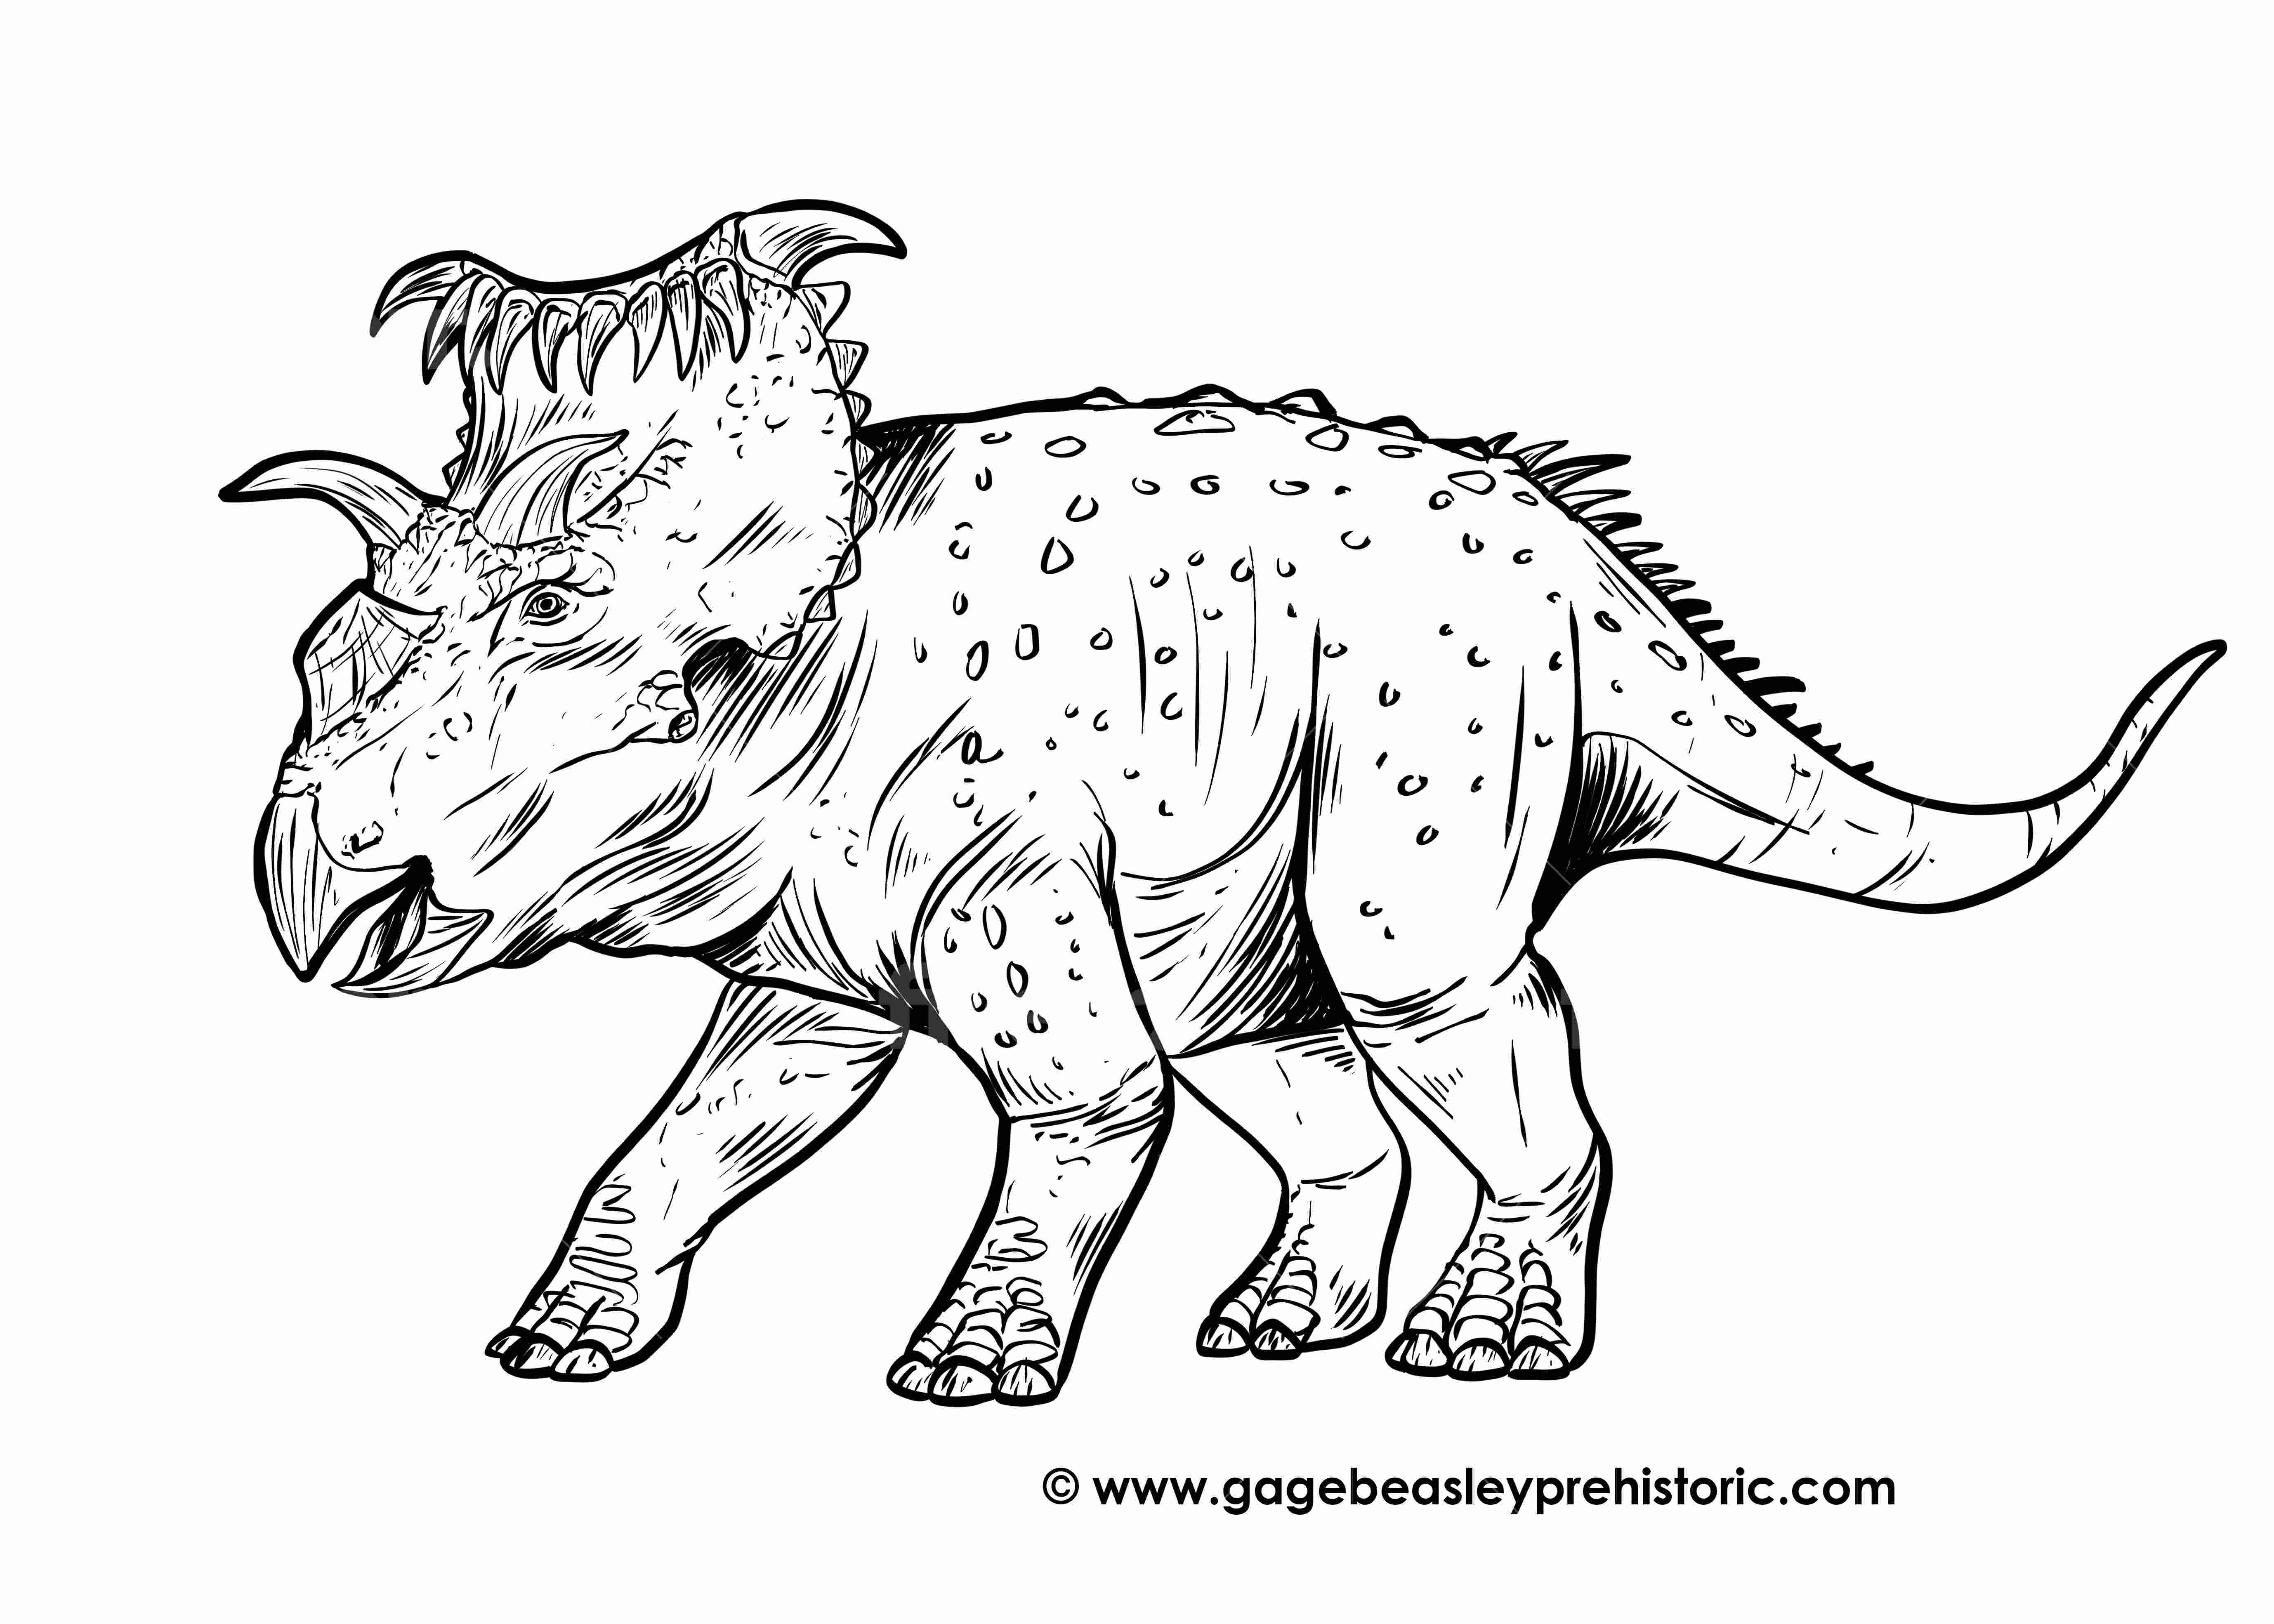 DINOSAURS, DinoPedia - The Dino Dan Wiki